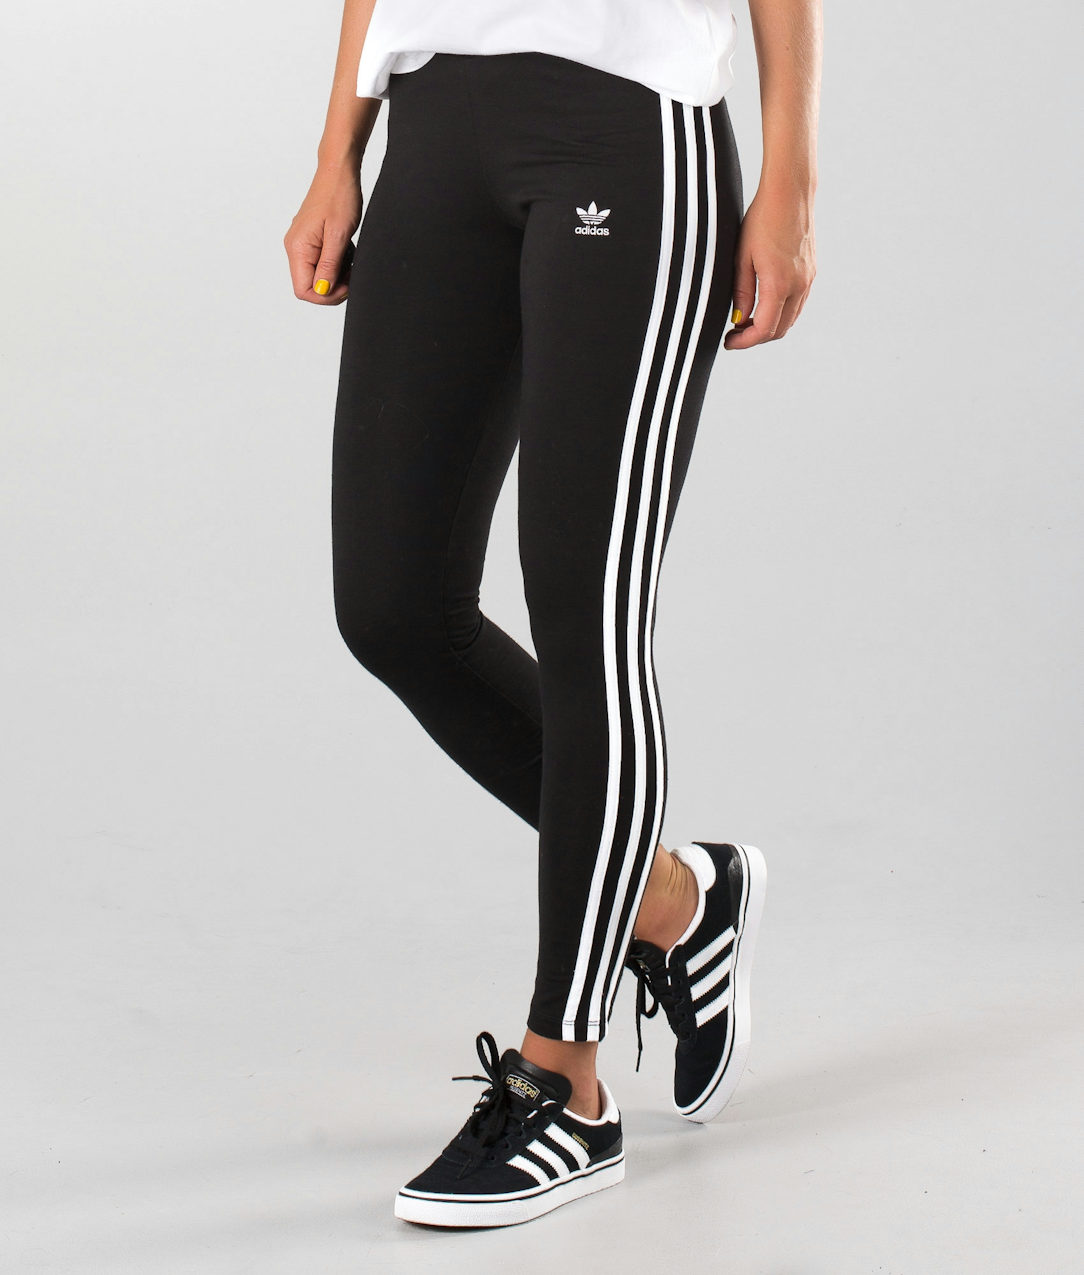 Adidas Originals 3 Stripes Leggings Black